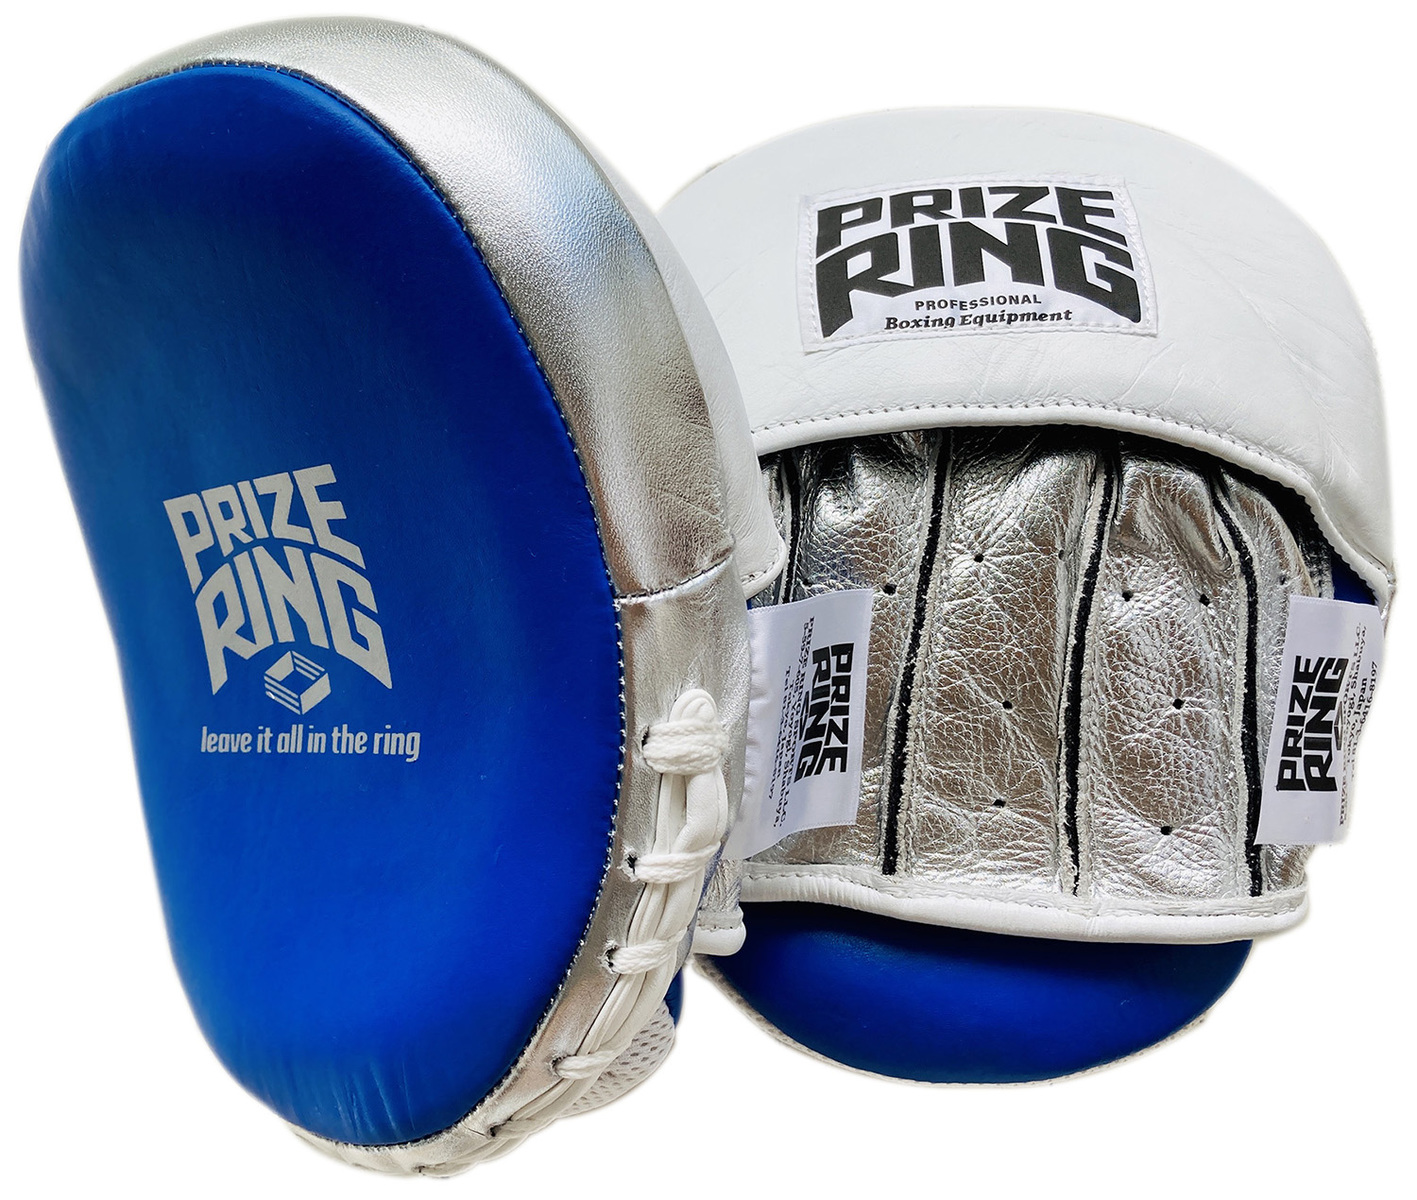 プロ仕様の本革製 PRIZE 在庫有 RING プライズリング ボクシング用ミット 青 正規代理店 シルバー 